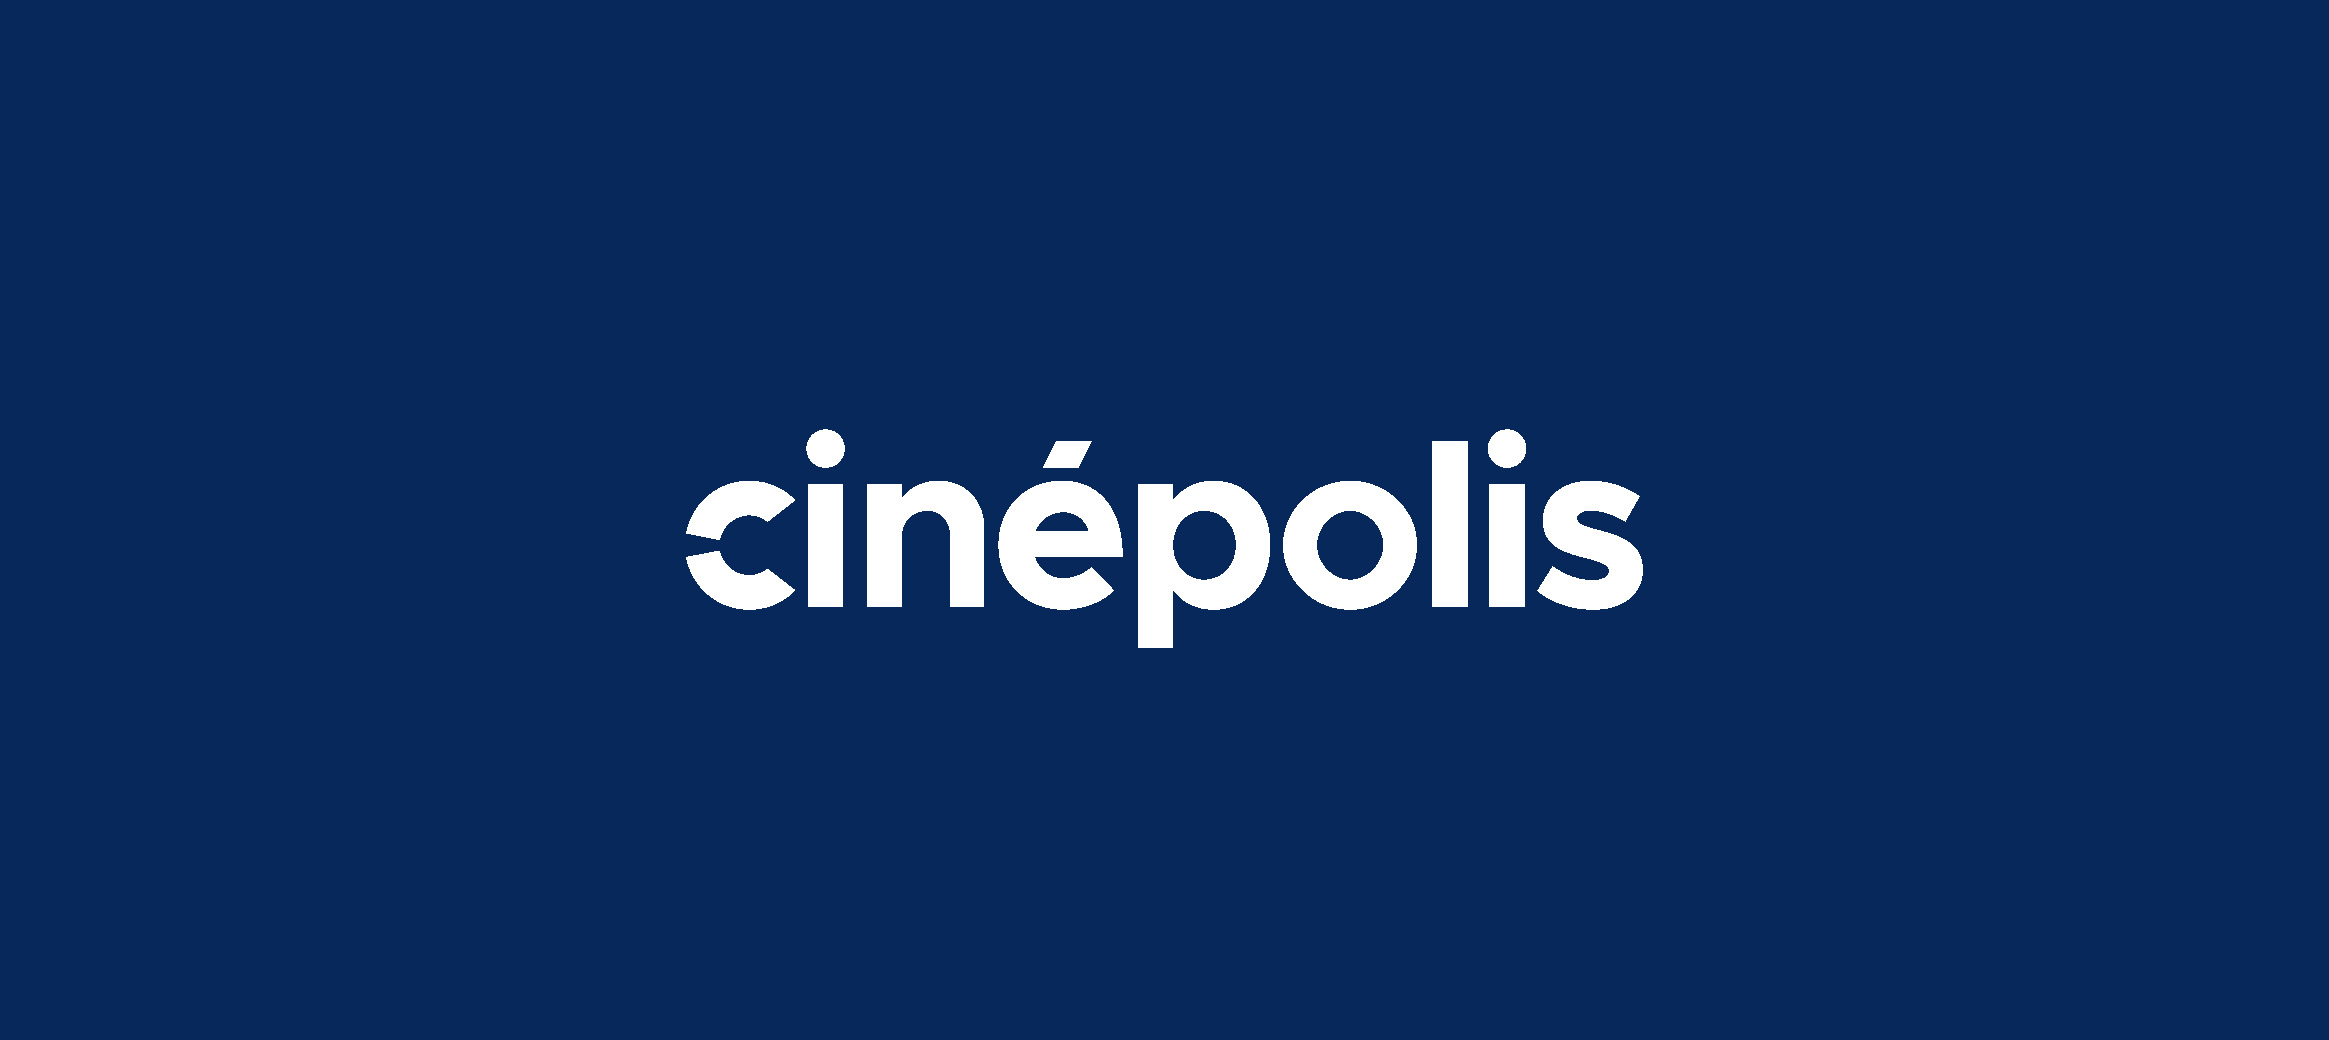 CINEPOLIS_1b